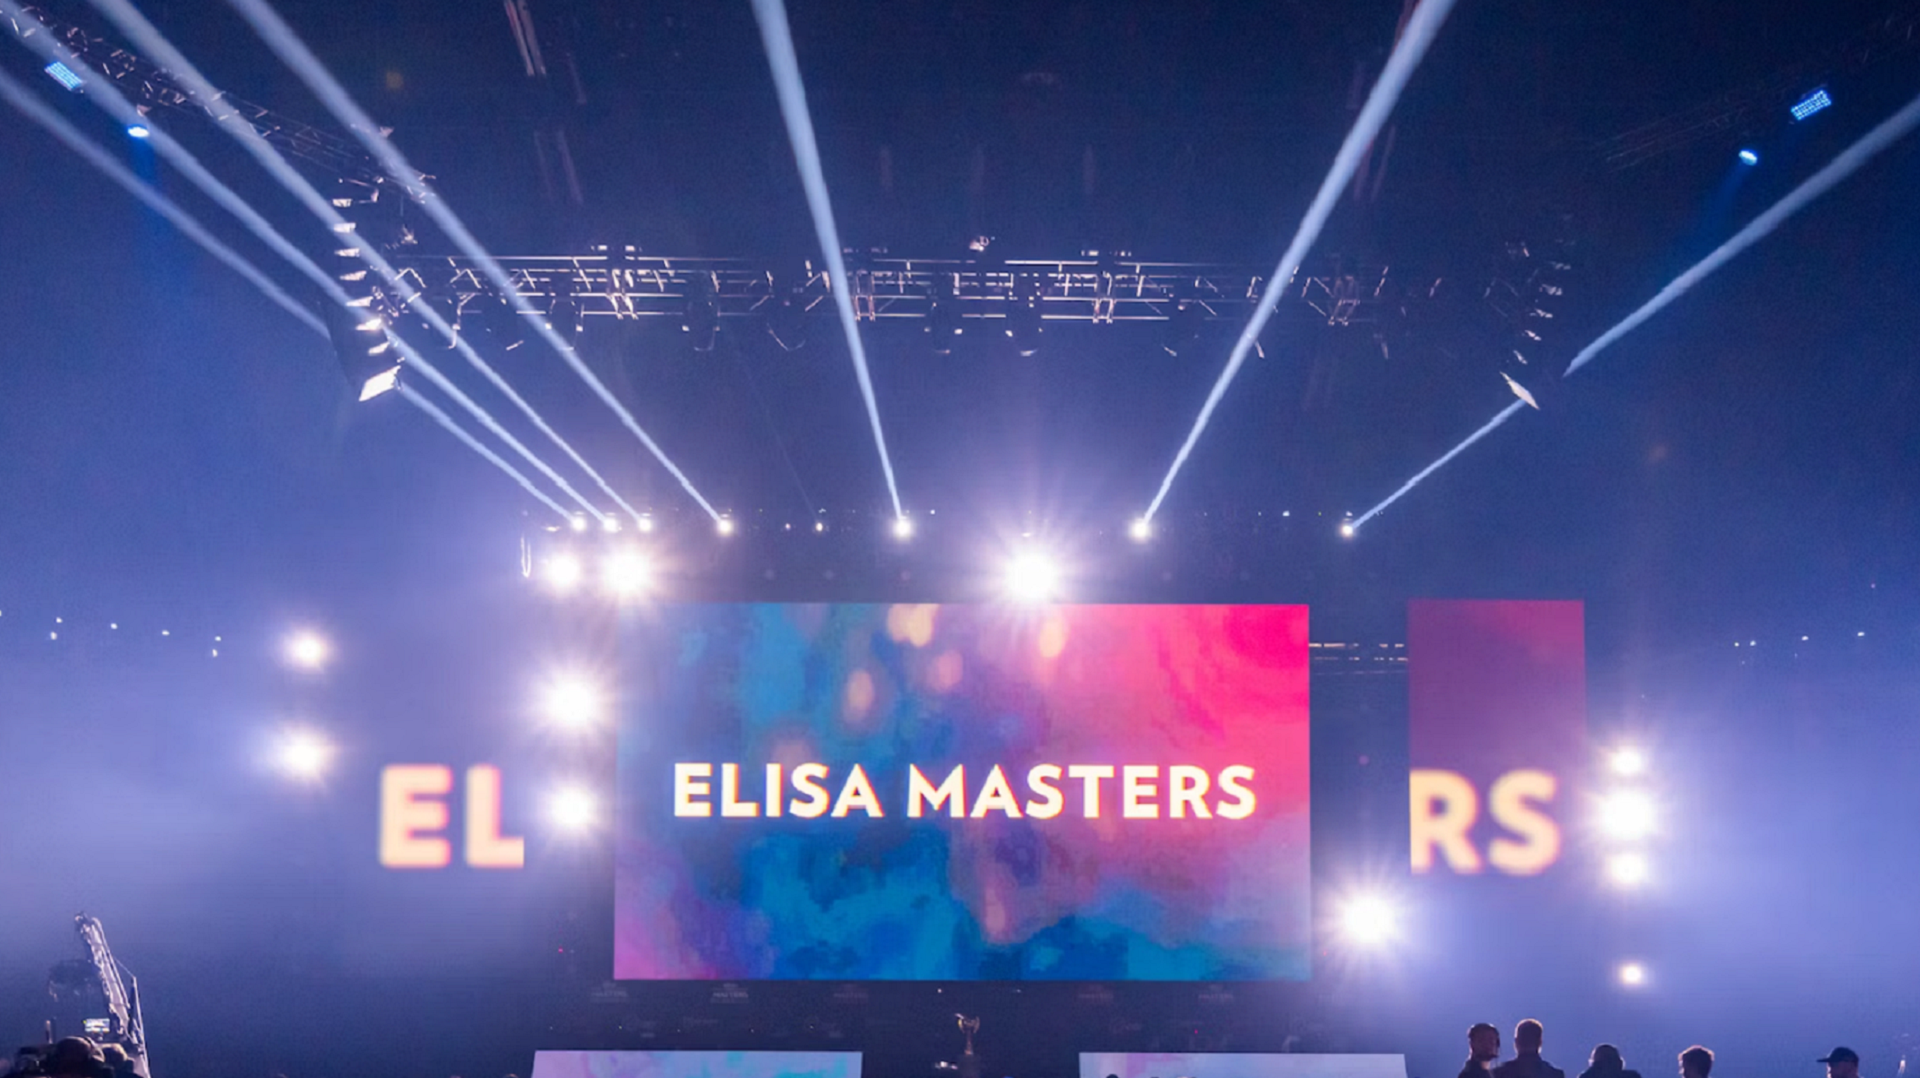 Elisa анонсировала весенний турнир по CS2 на 25 тысяч долларов призовых